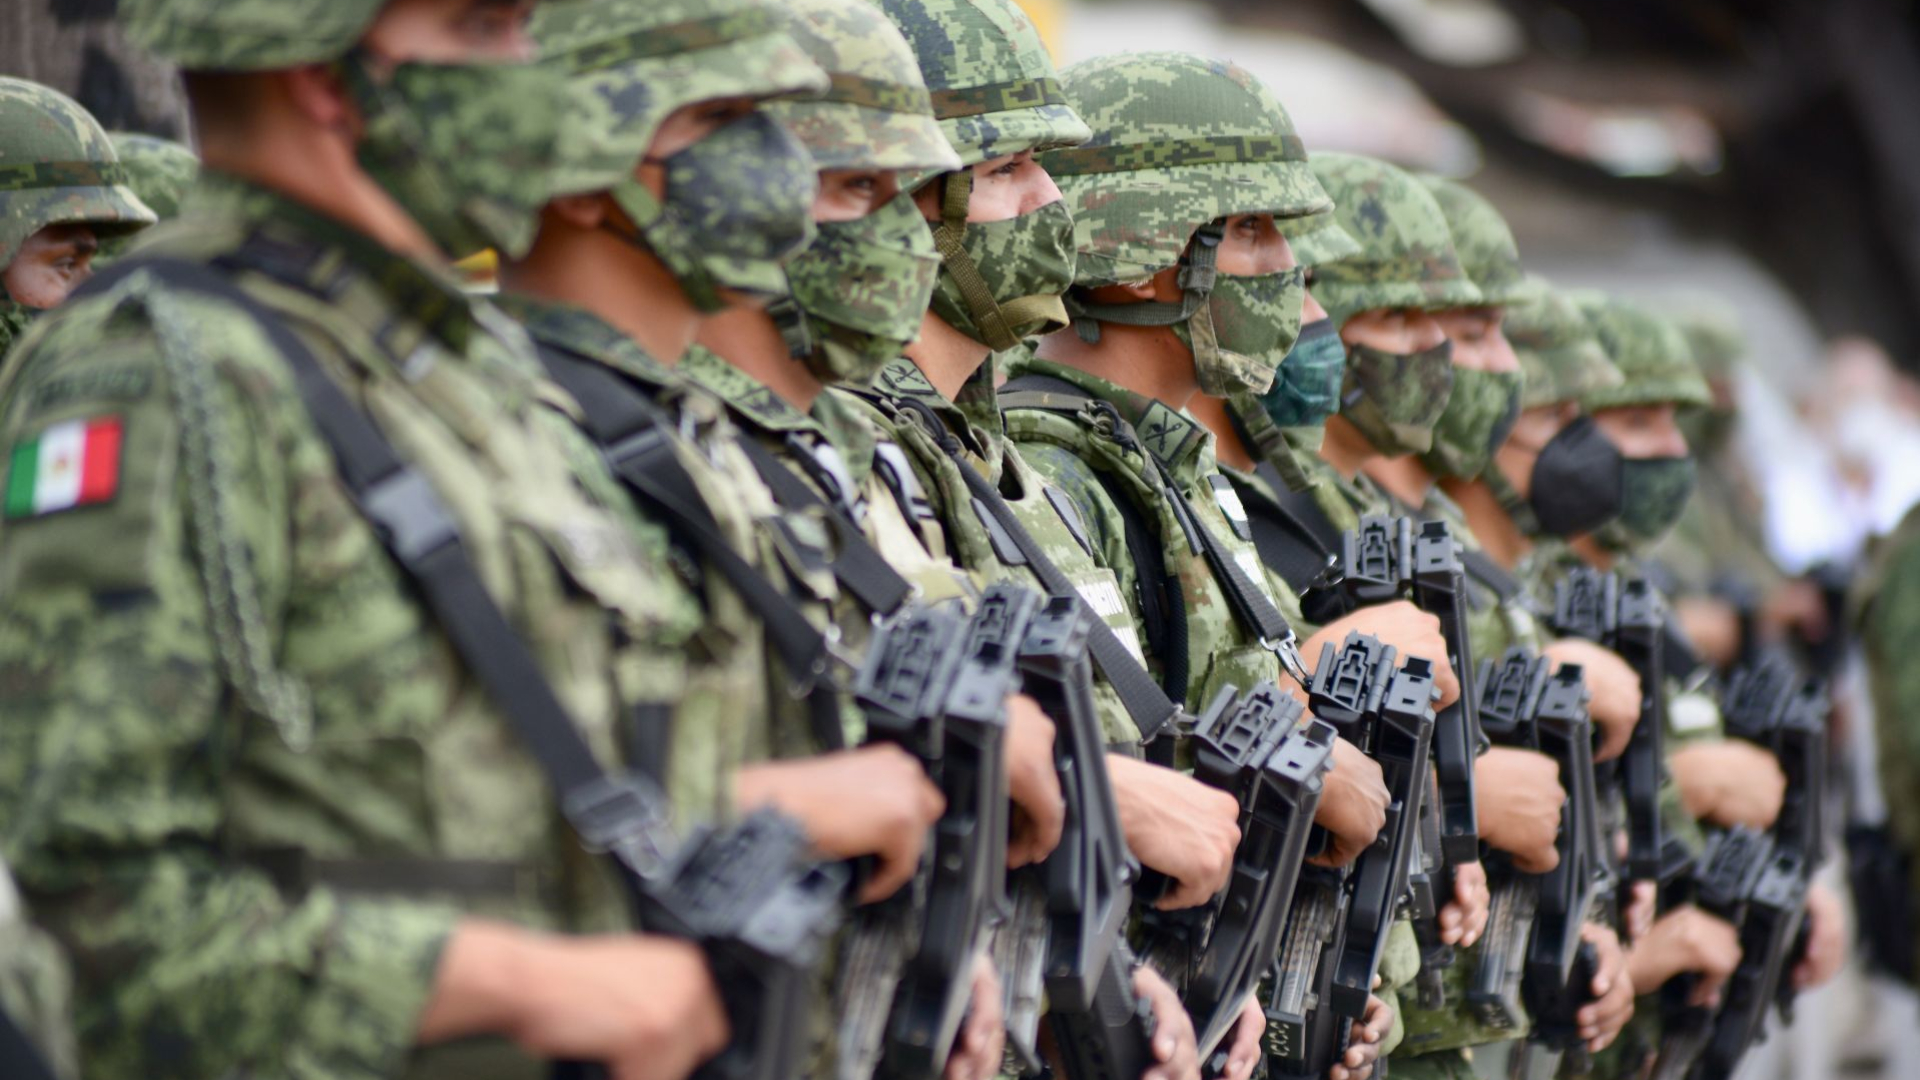 Centro Prodh rechazó que haya sido clasificado como un “grupo de presión” por parte el Ejército: “Es lamentable”  